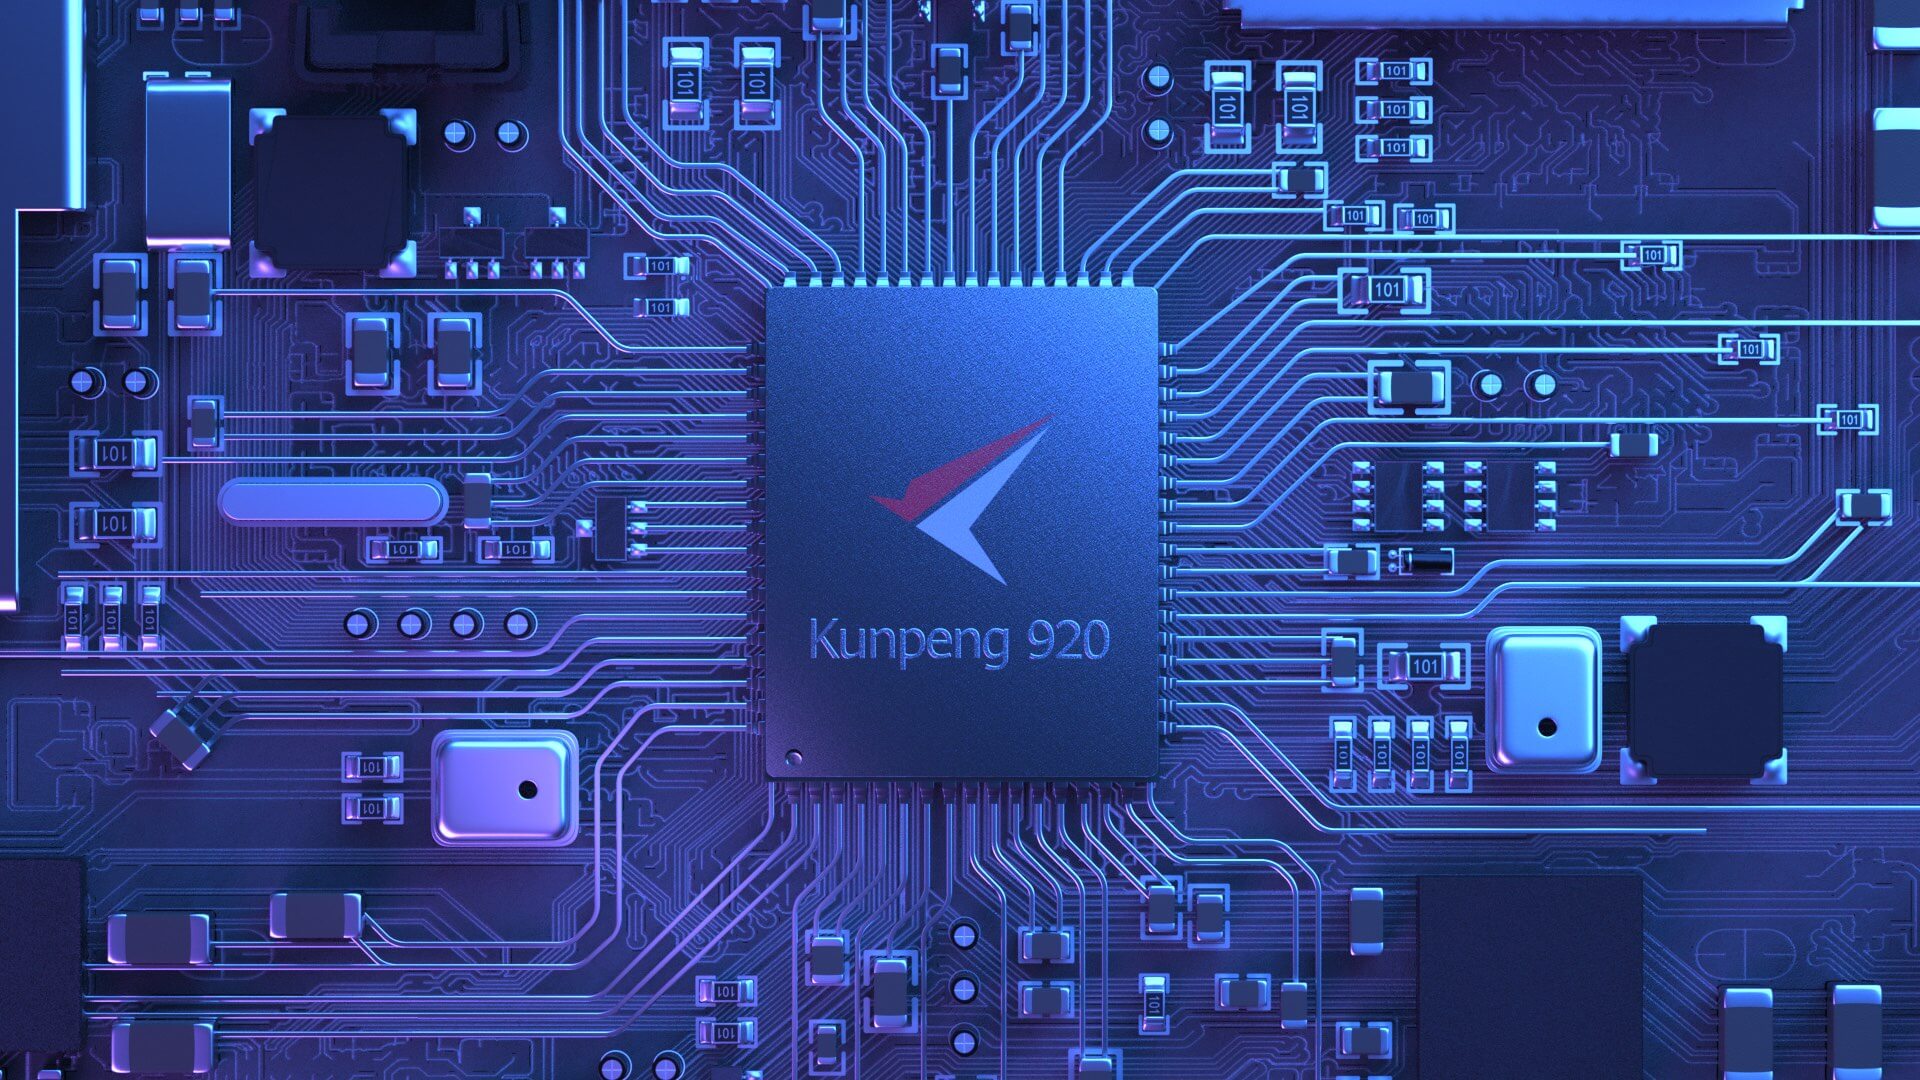 Huawei's 24-core Kunpeng desktop CPU said to be faster than Intel's Core i9-9900K